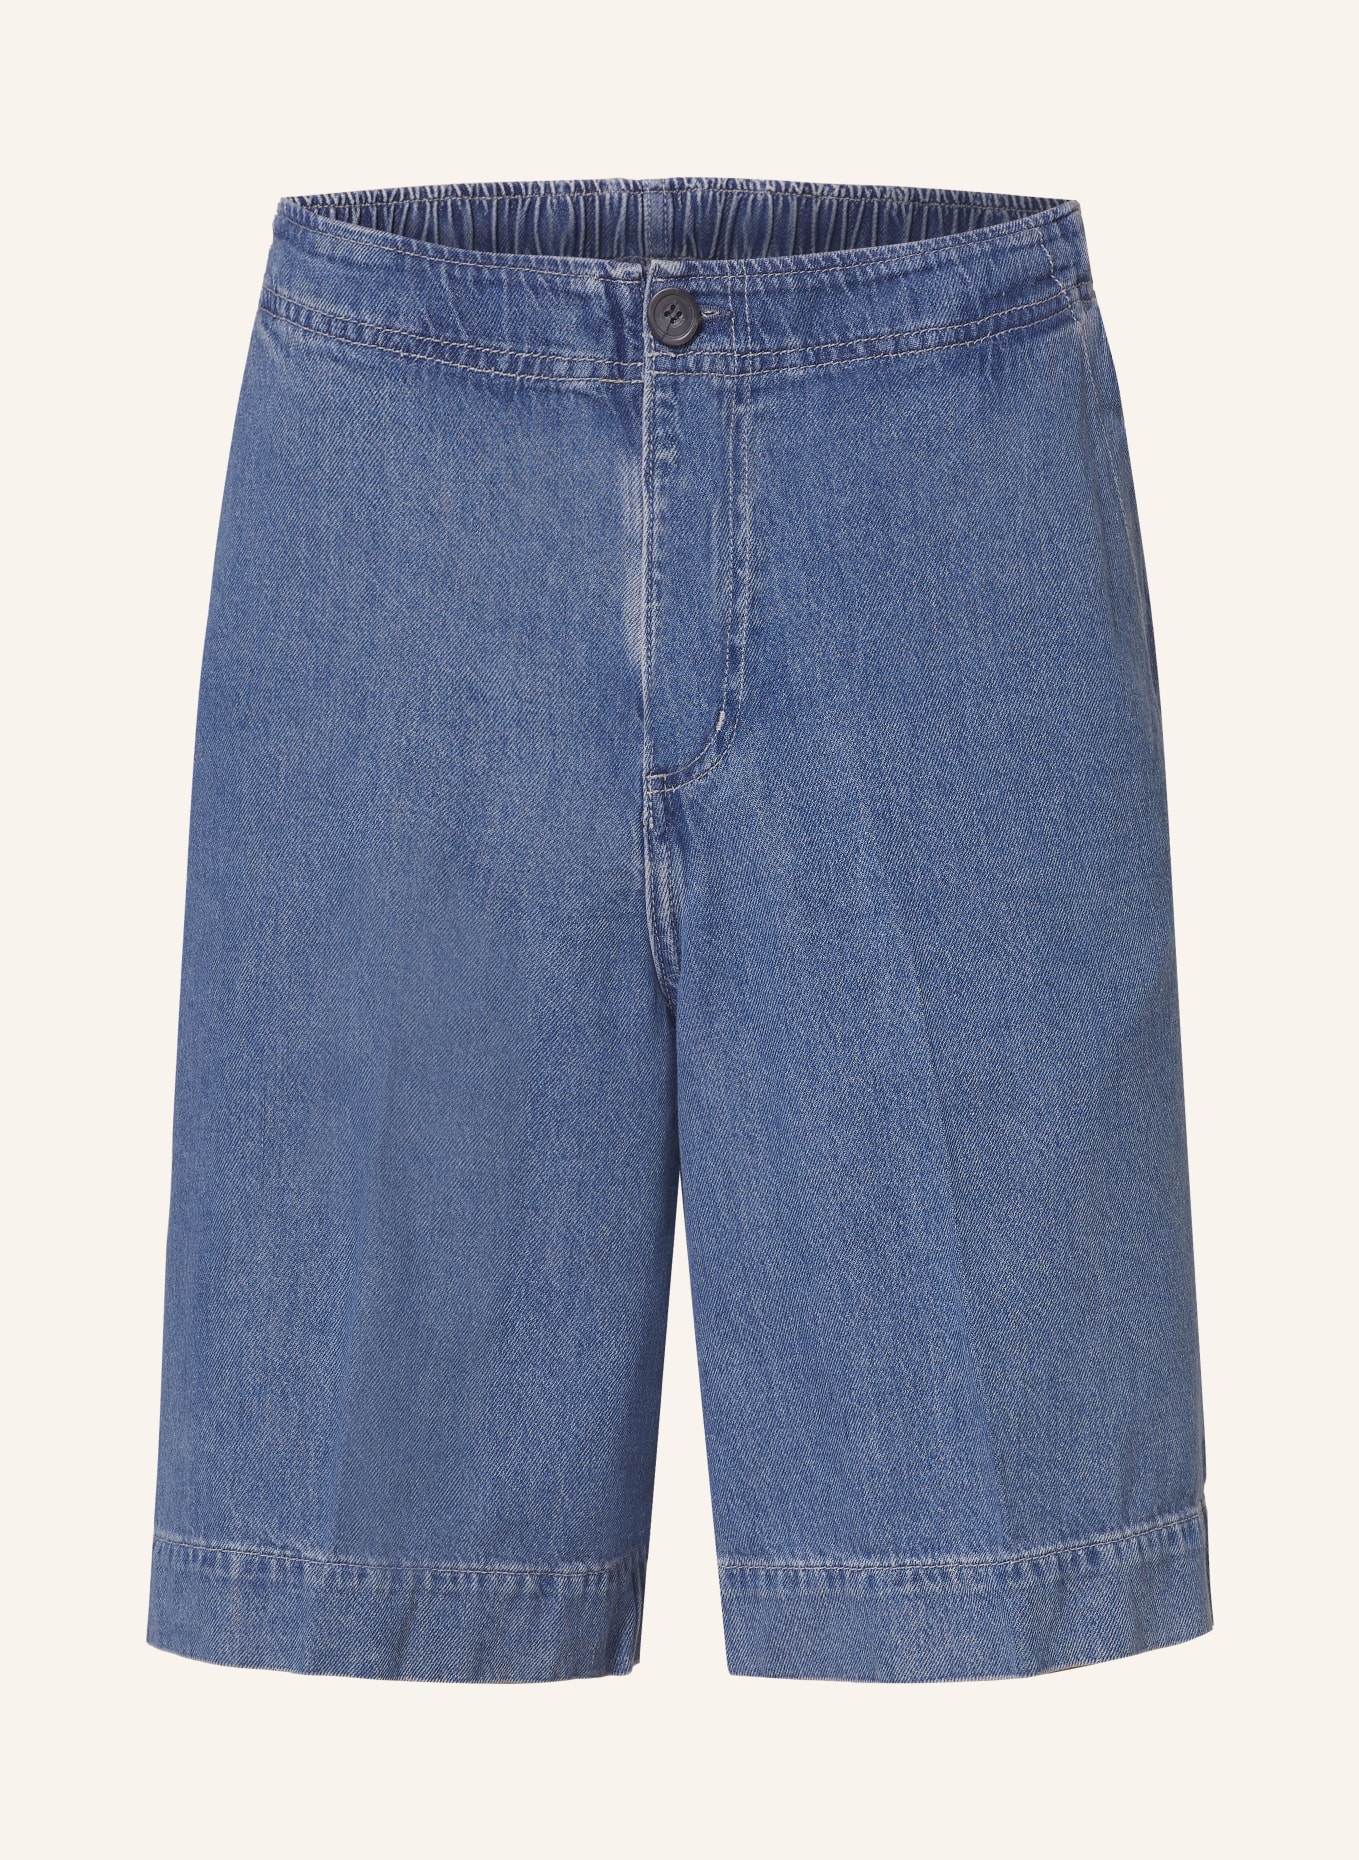 COS Denim shorts, Color: 001 BLUE (Image 1)